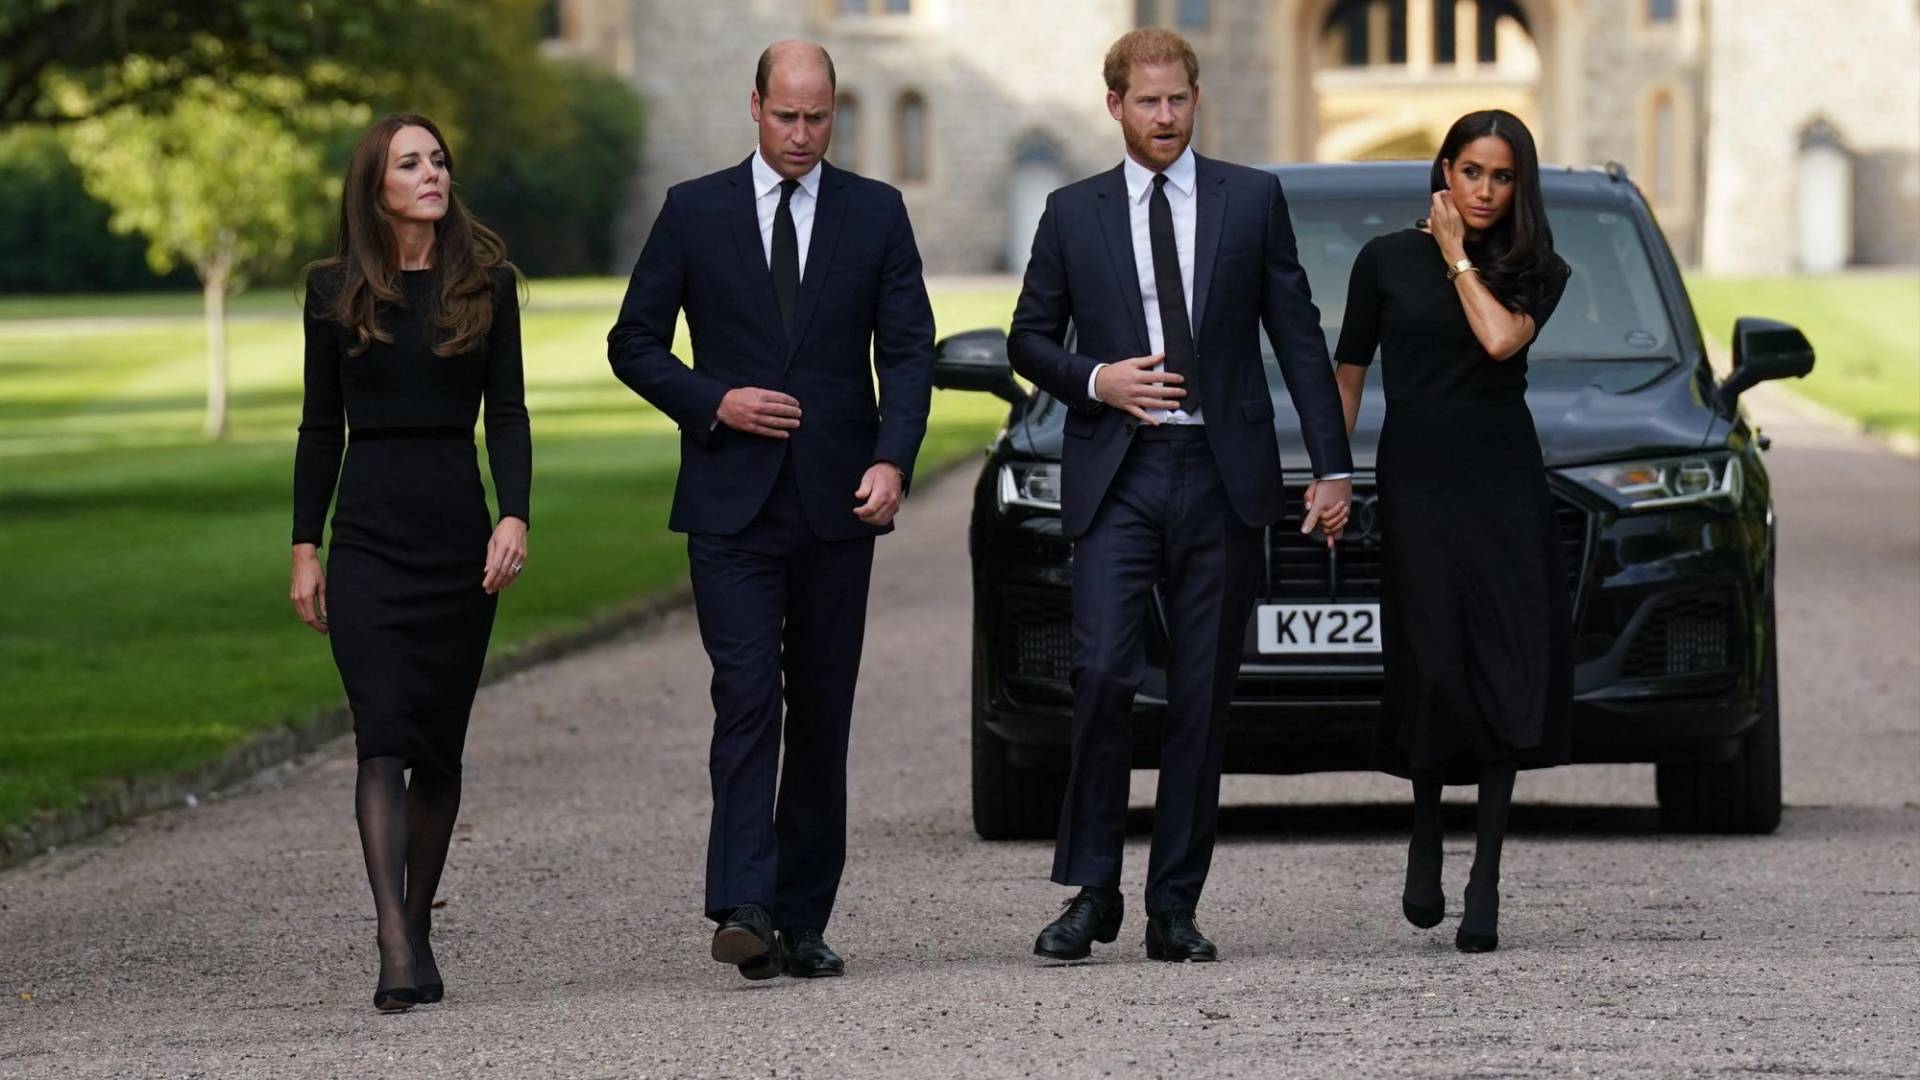 $!Los príncipes de Gales, William y Kate, hicieron una tregua con Harry y Meghan y salieron a saludar juntos en Windsor.